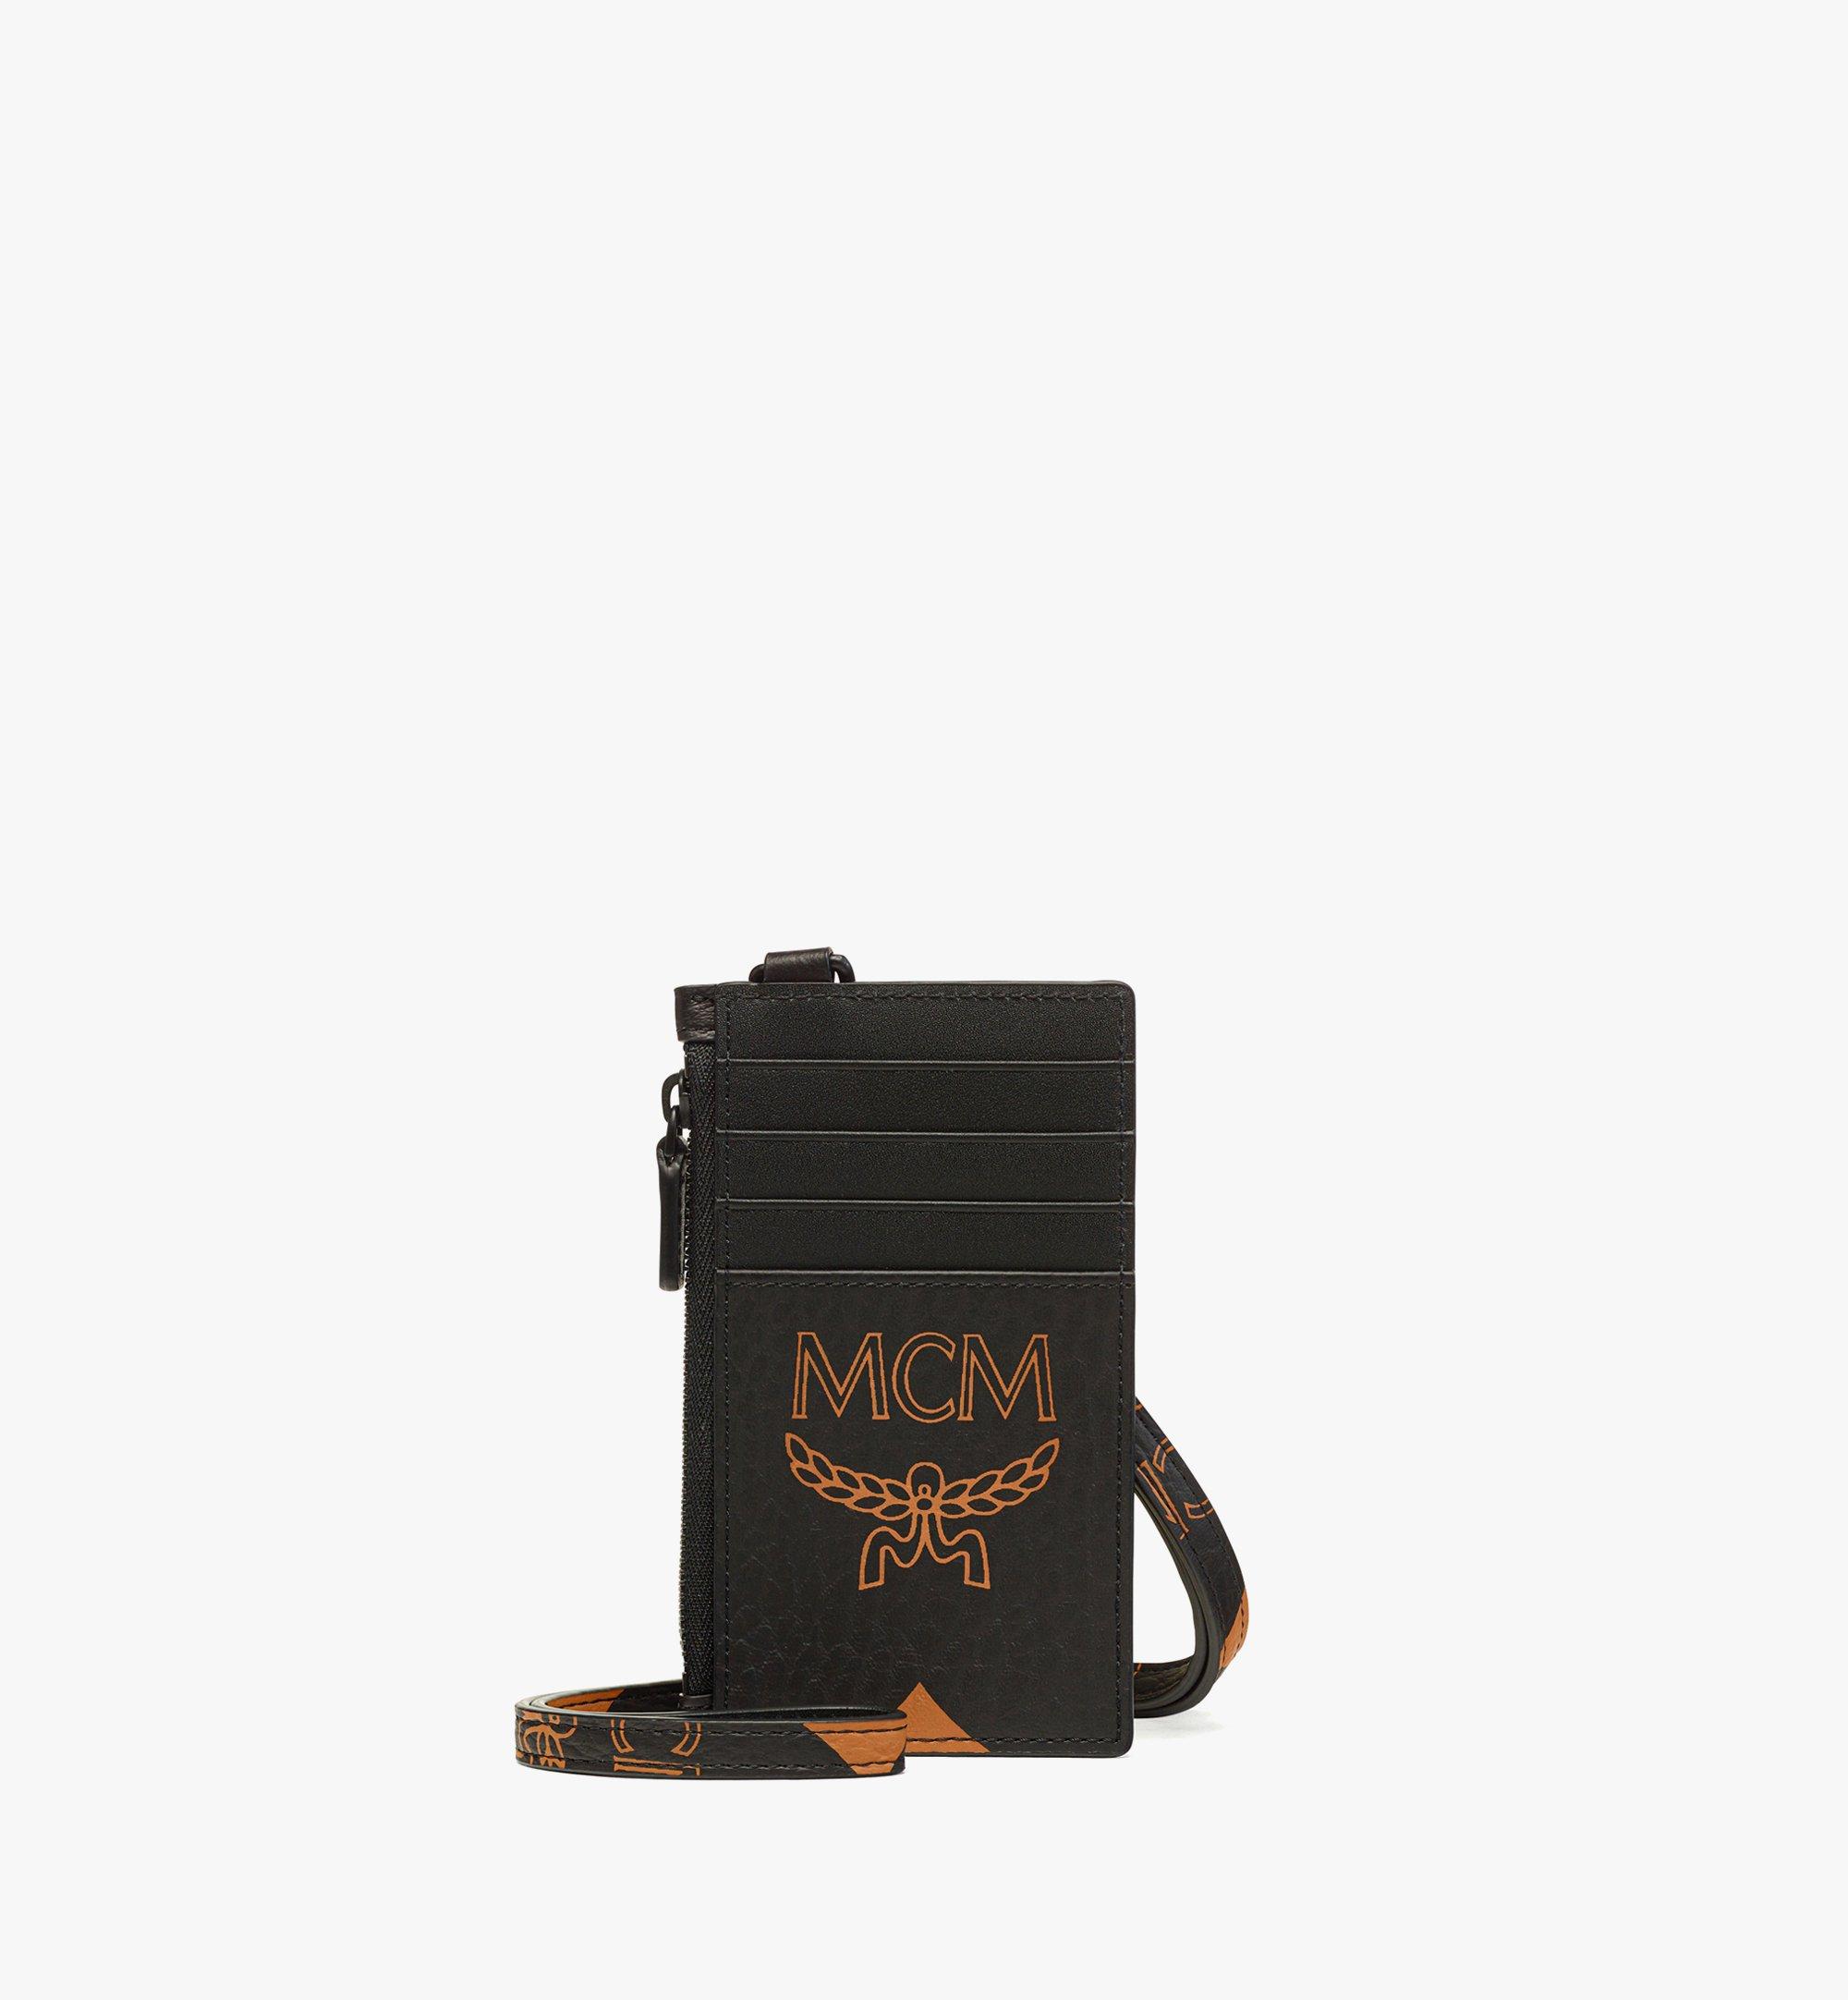 MCM Monogram Printed Zipped Mini Key Pouch - ShopStyle Wallets